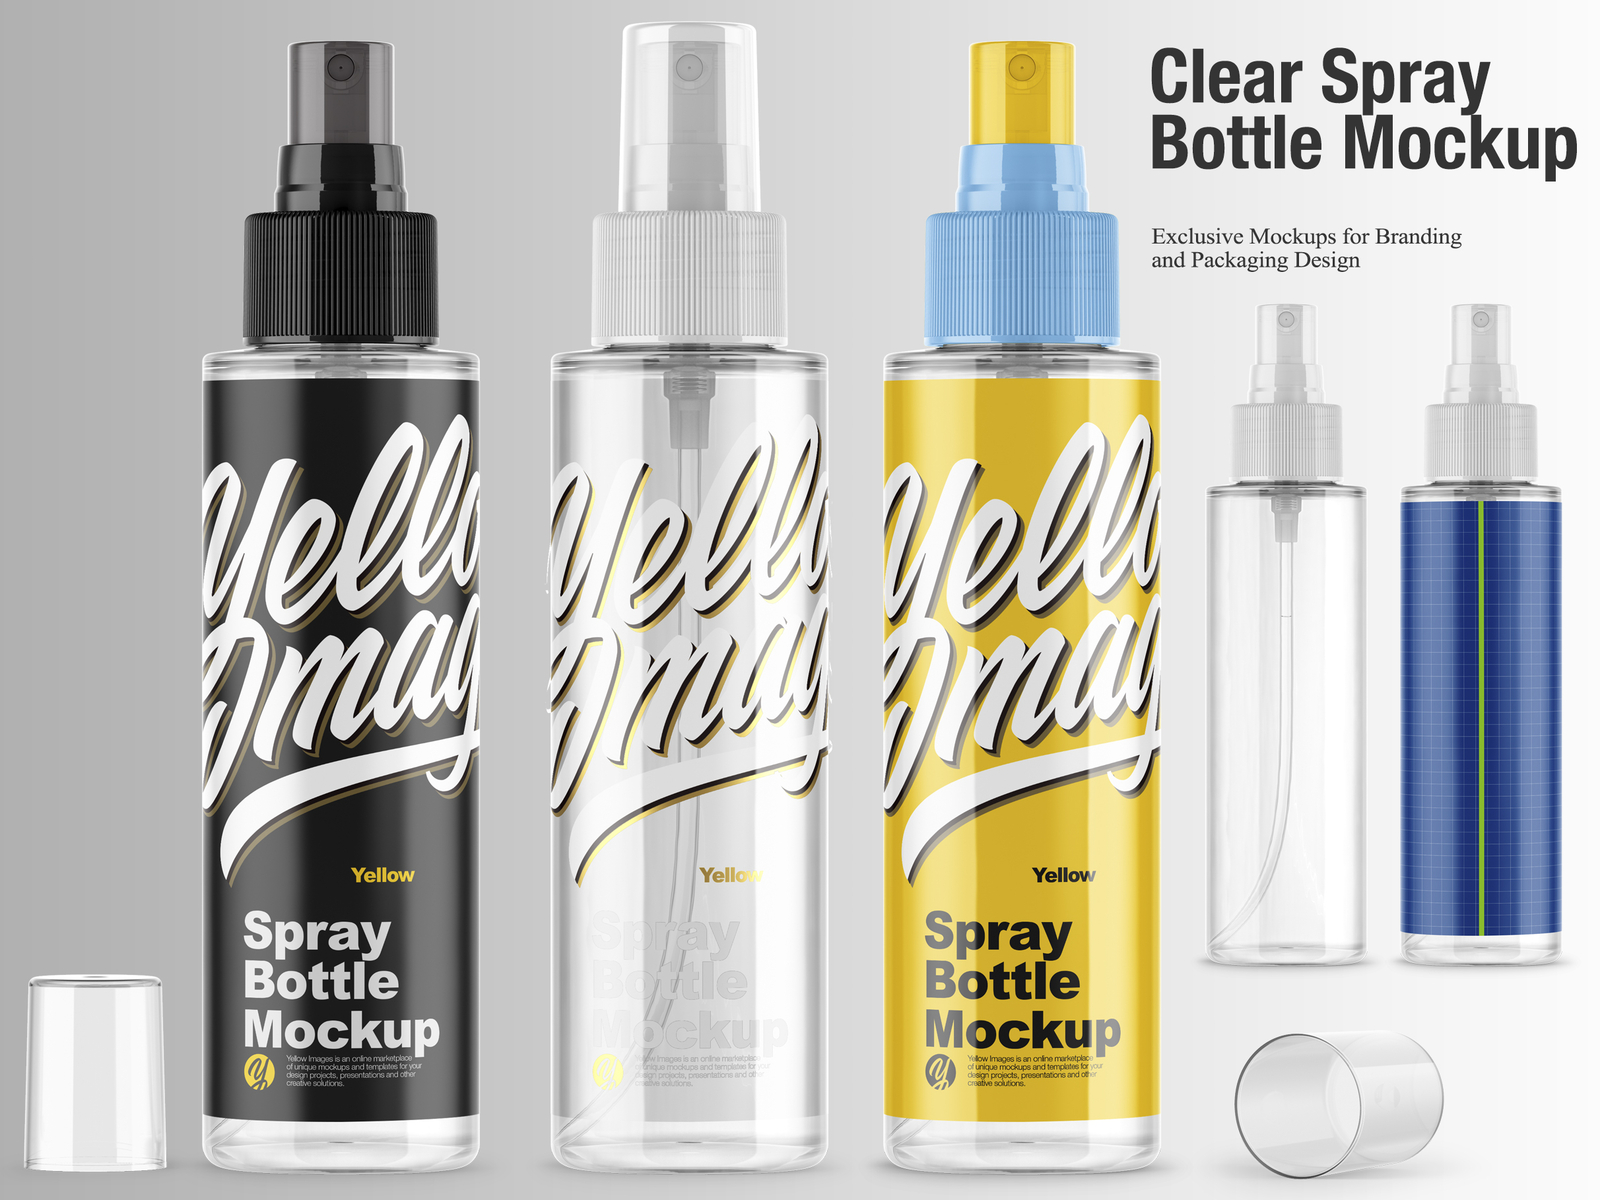 Download Clear Spray Bottle Mockup By Oleksandr Hlubokyi On Dribbble